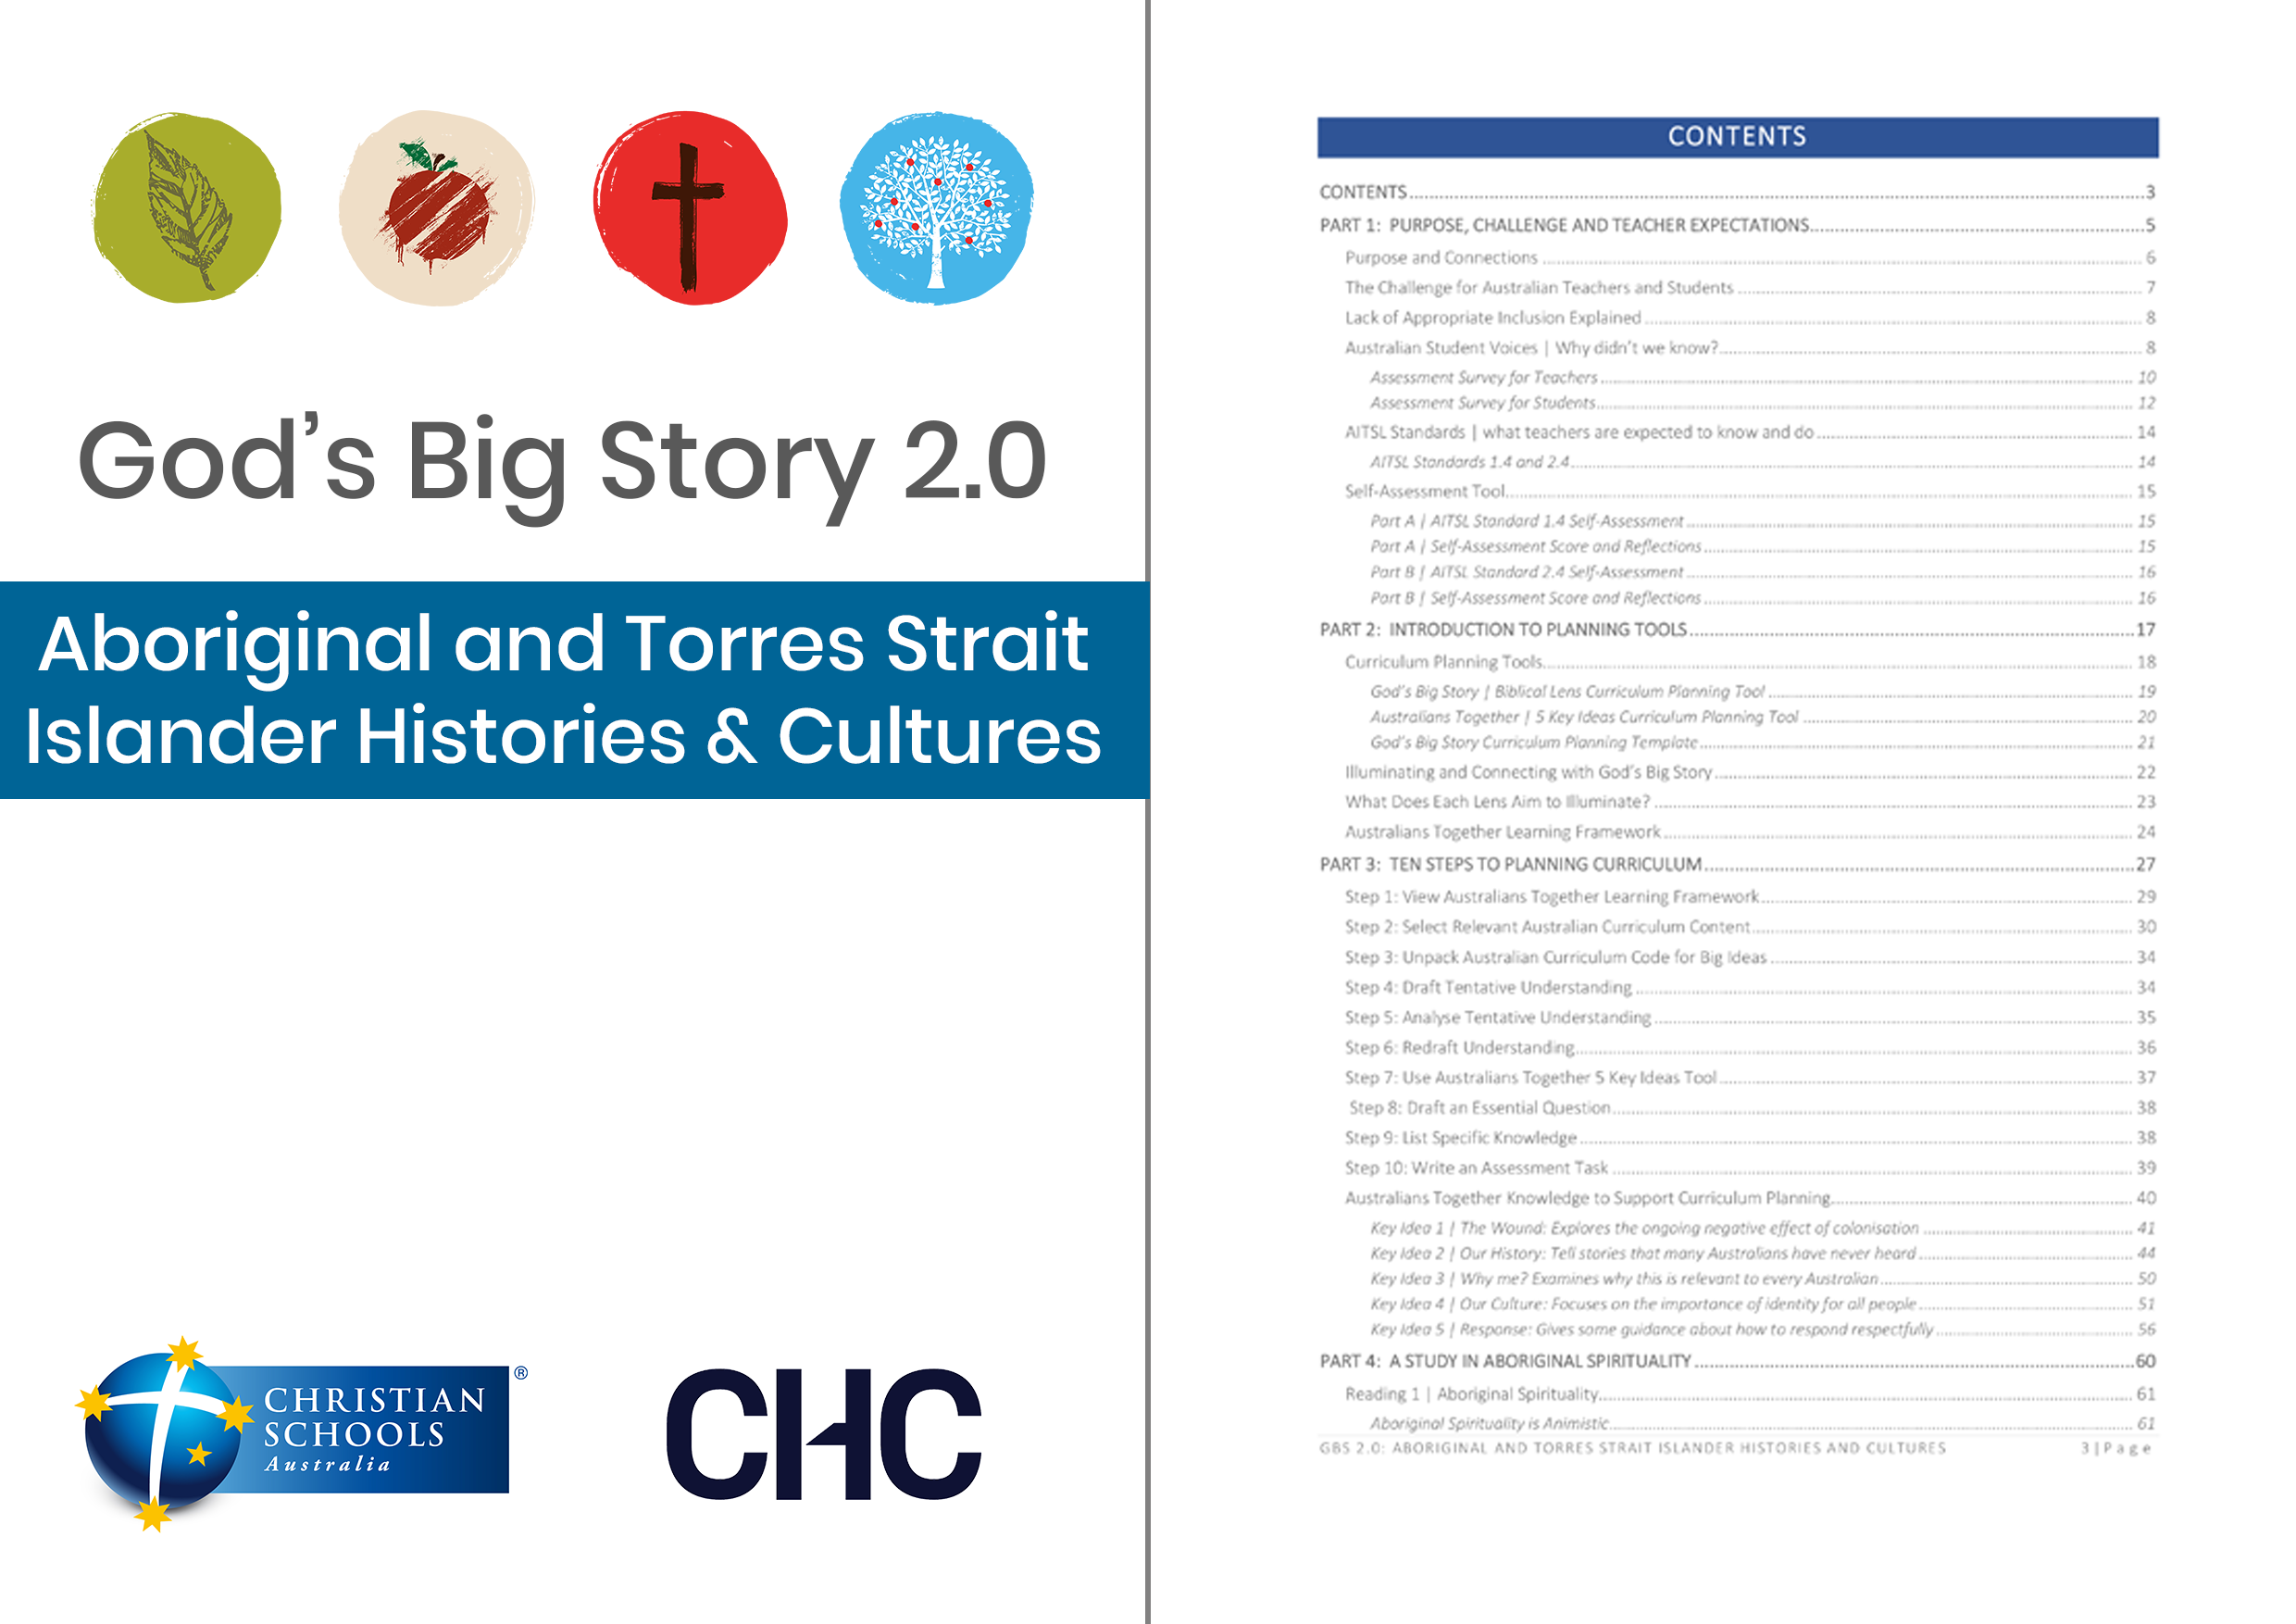 GBS 2.0: Aboriginal and Torres Strait Islander Histories